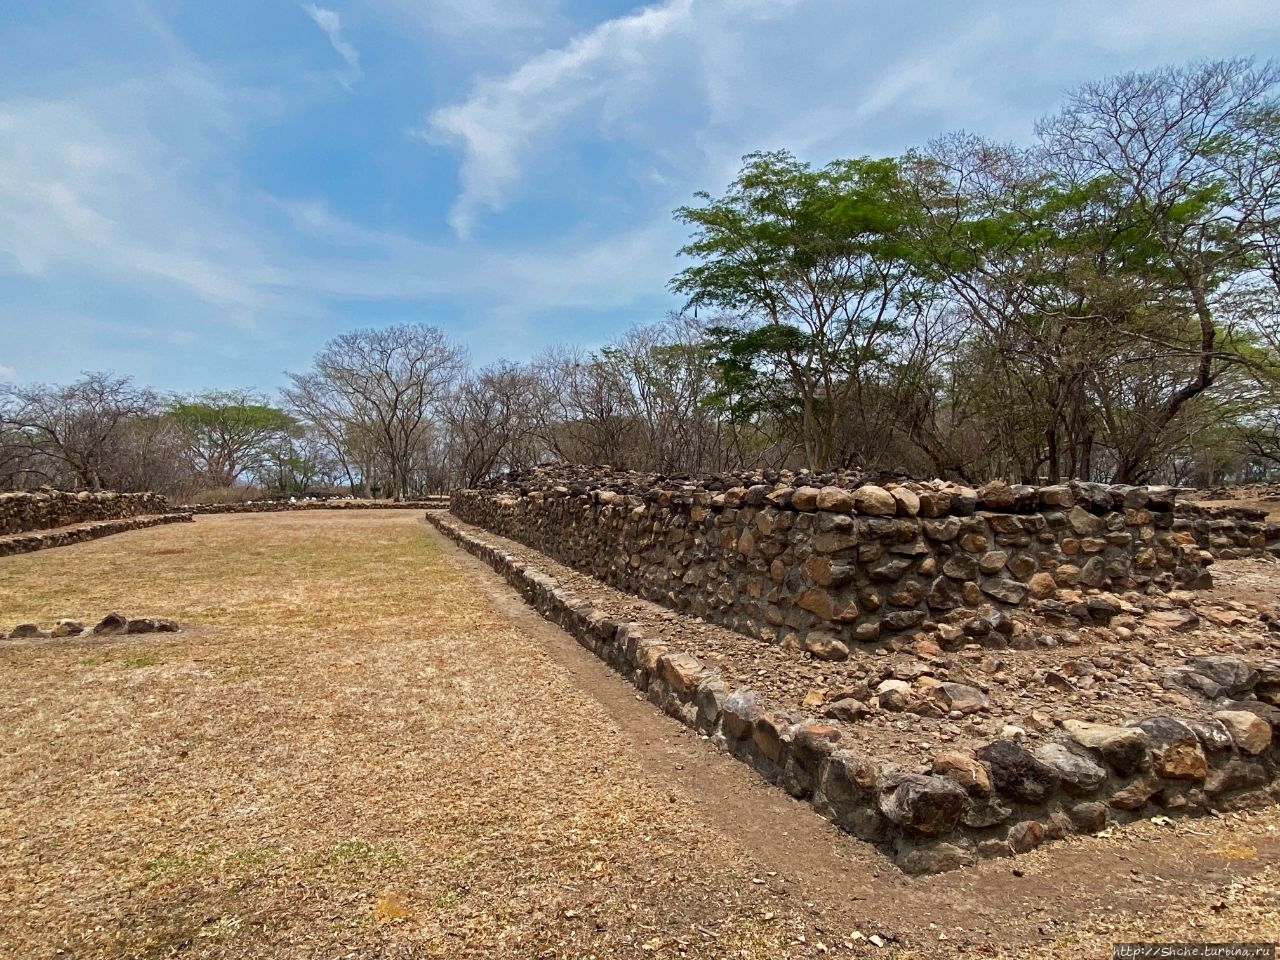 Cihuatán - южные границы постклассического периода майя